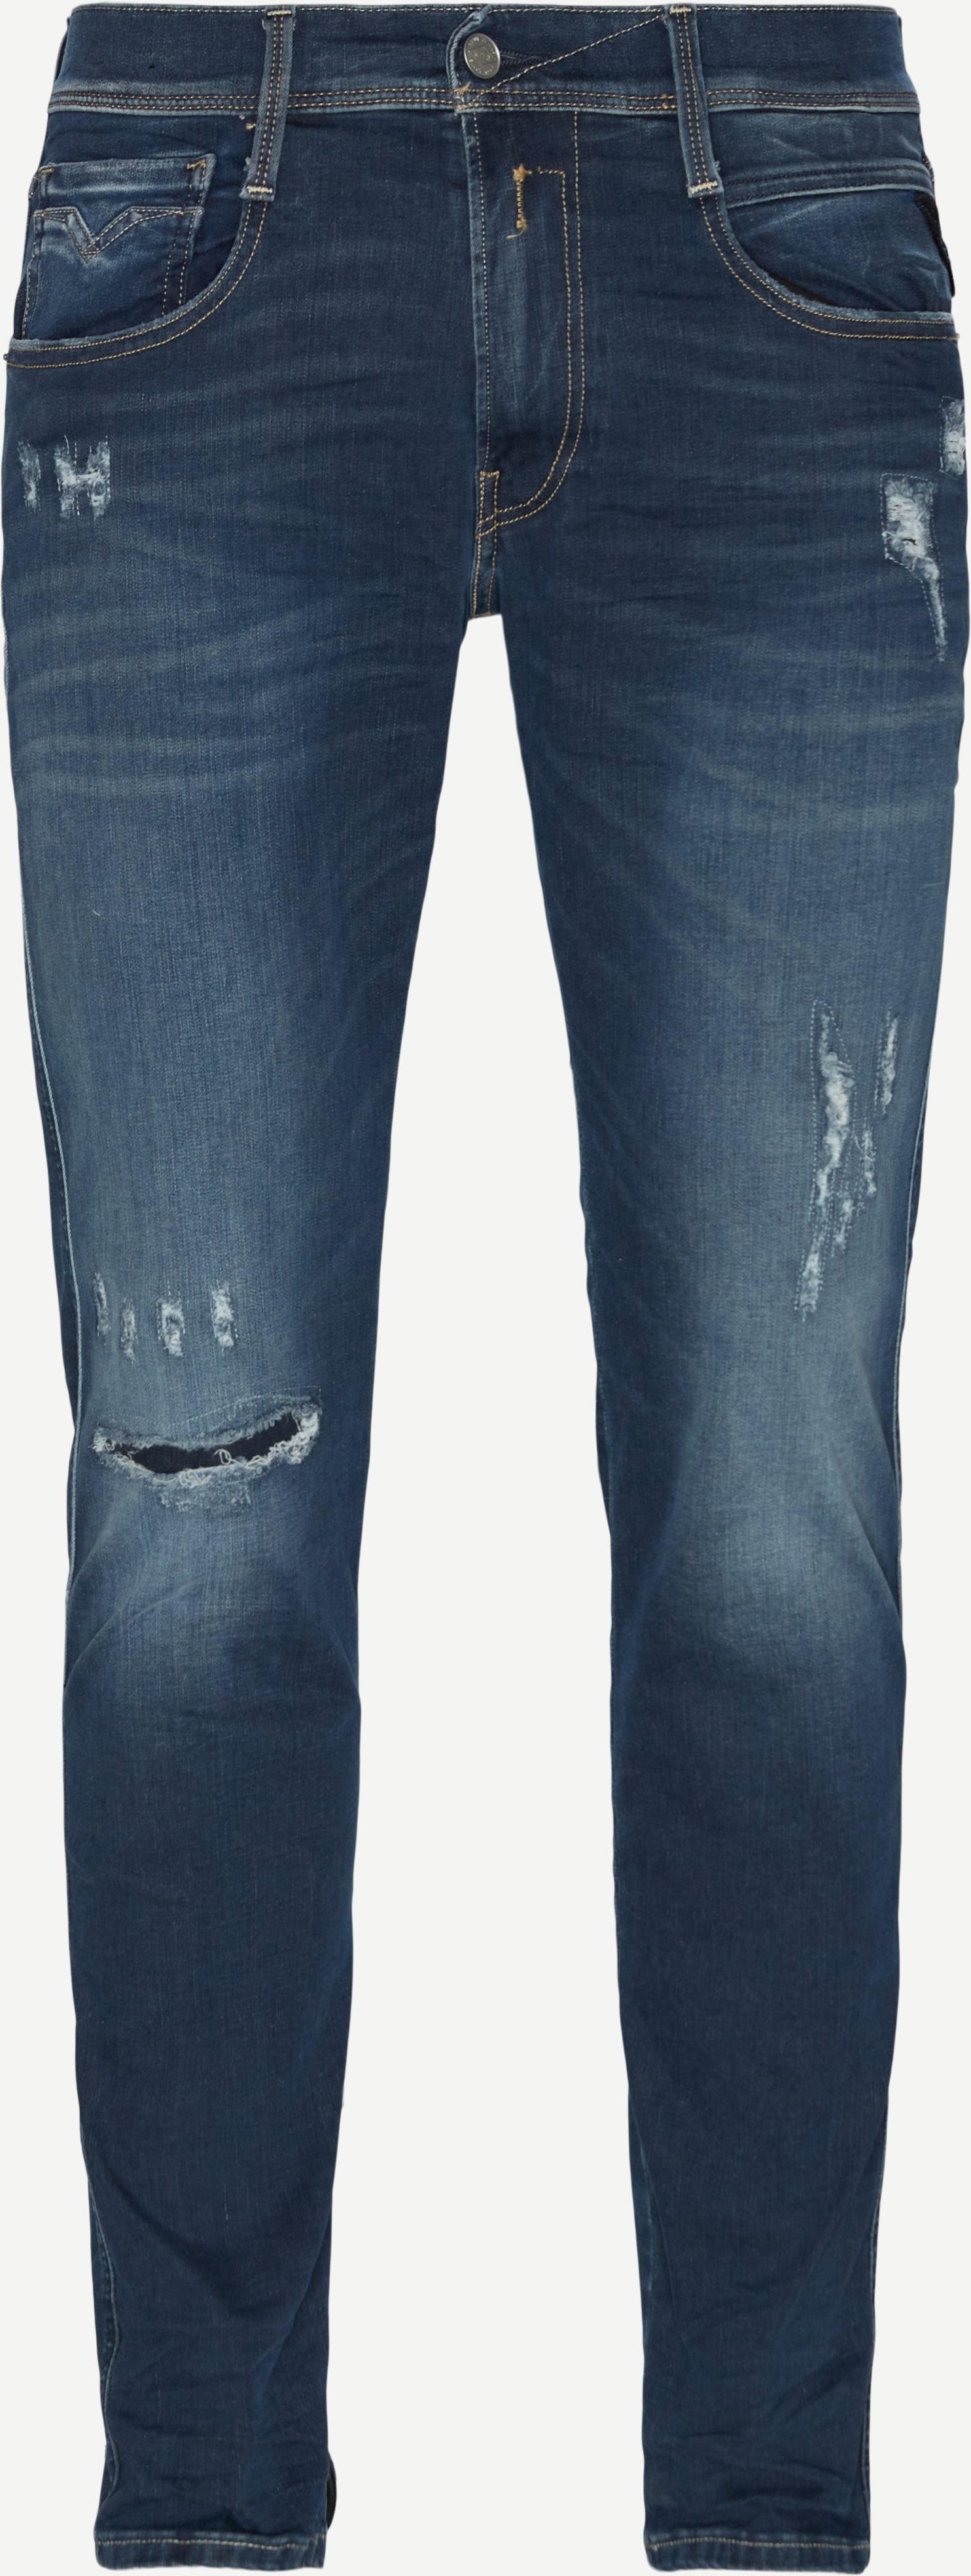 661 XI20 Anbass Hyperflex Jeans - Jeans - Slim fit - Denim